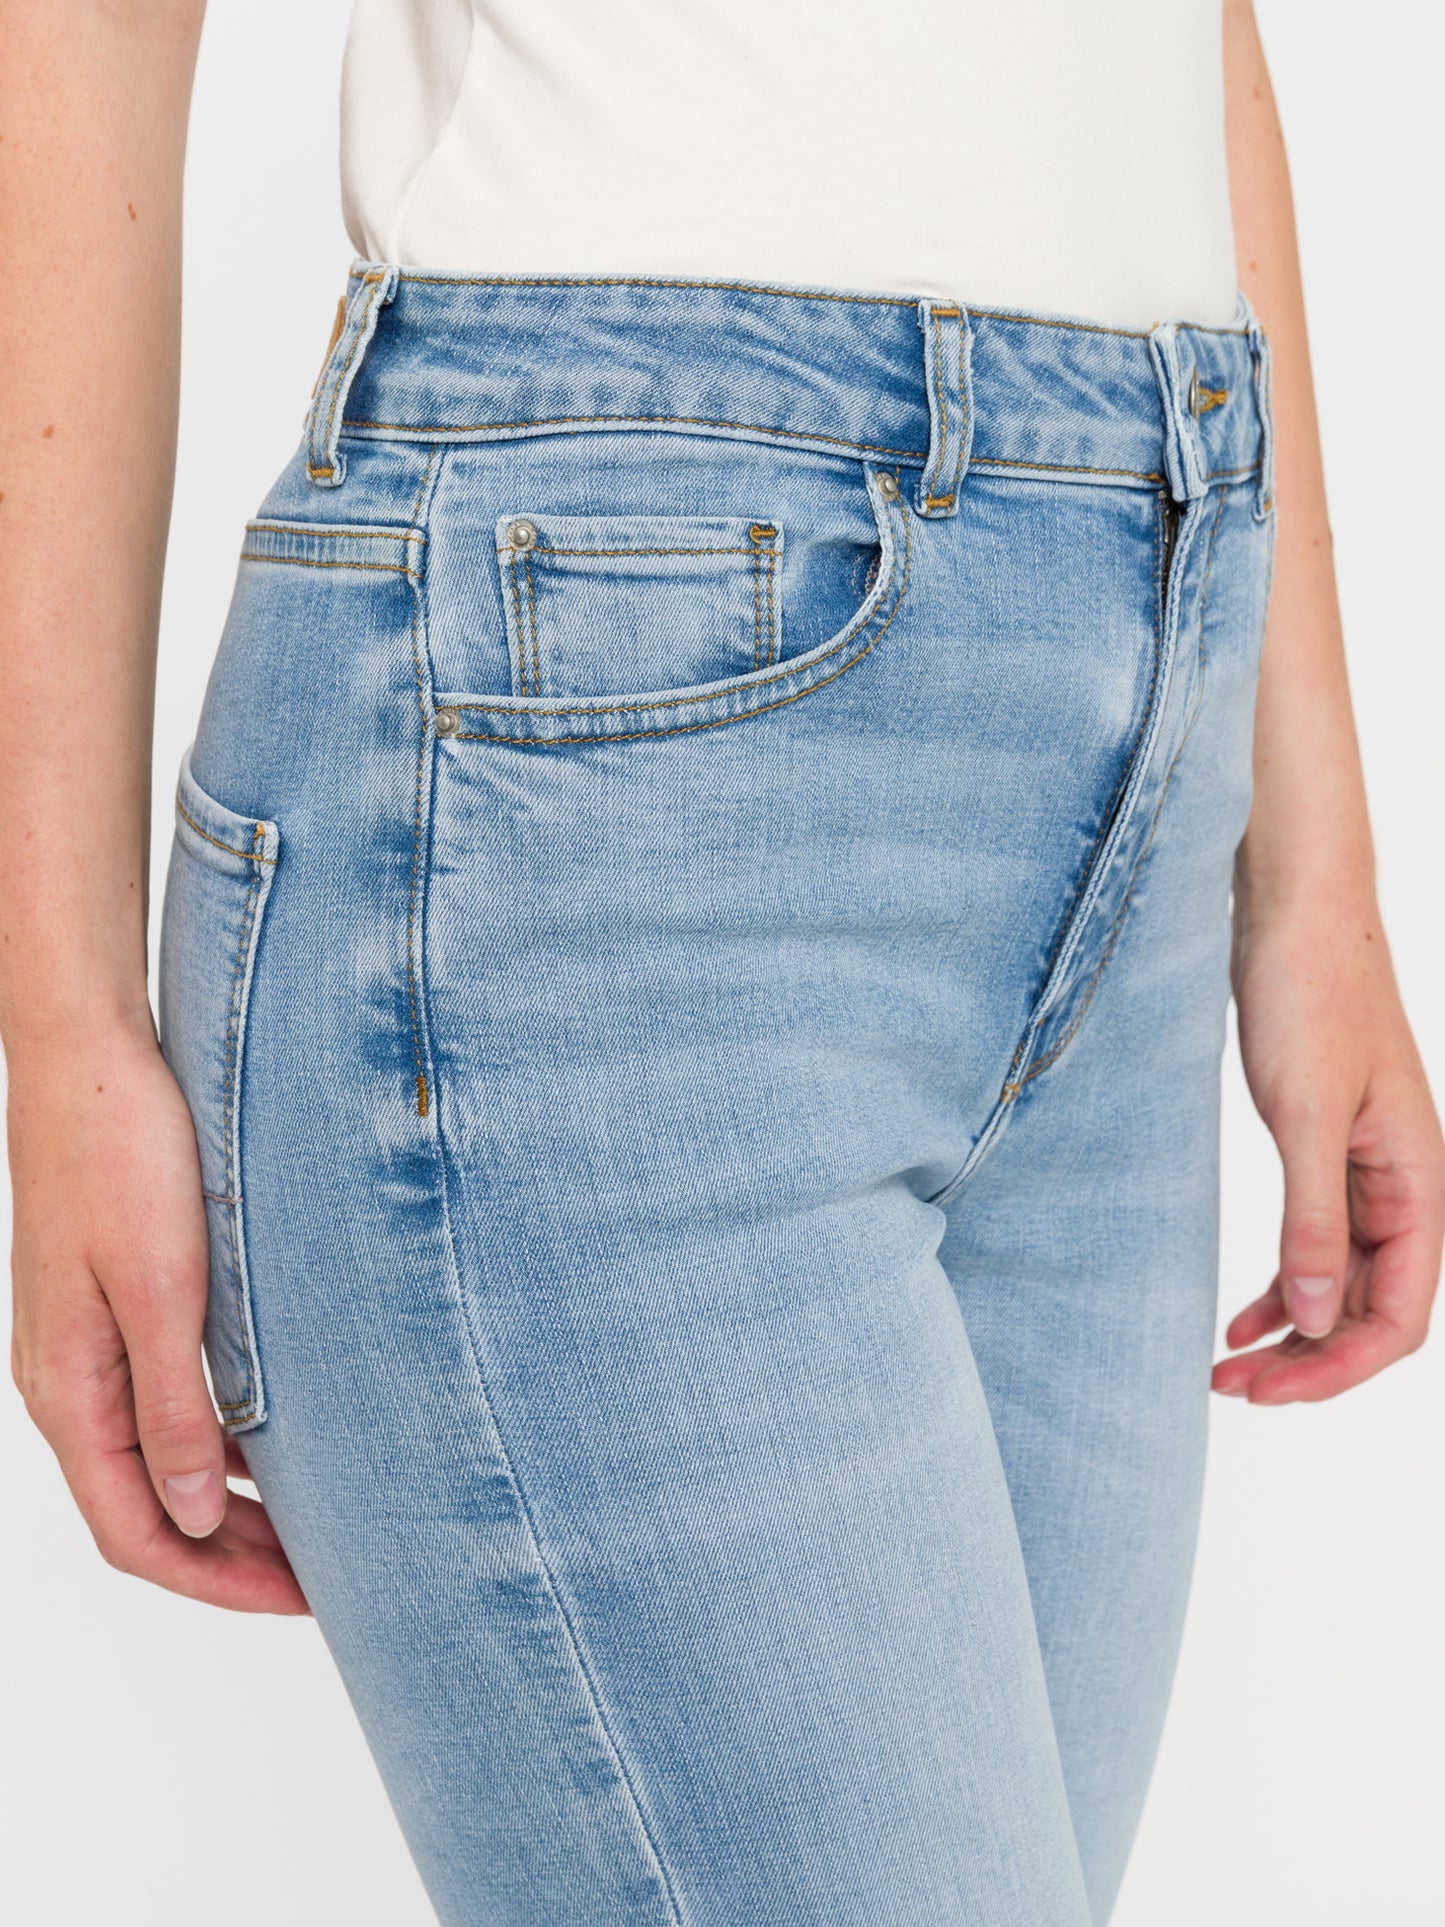 Women's jeans high waist cropped flare leg light blue